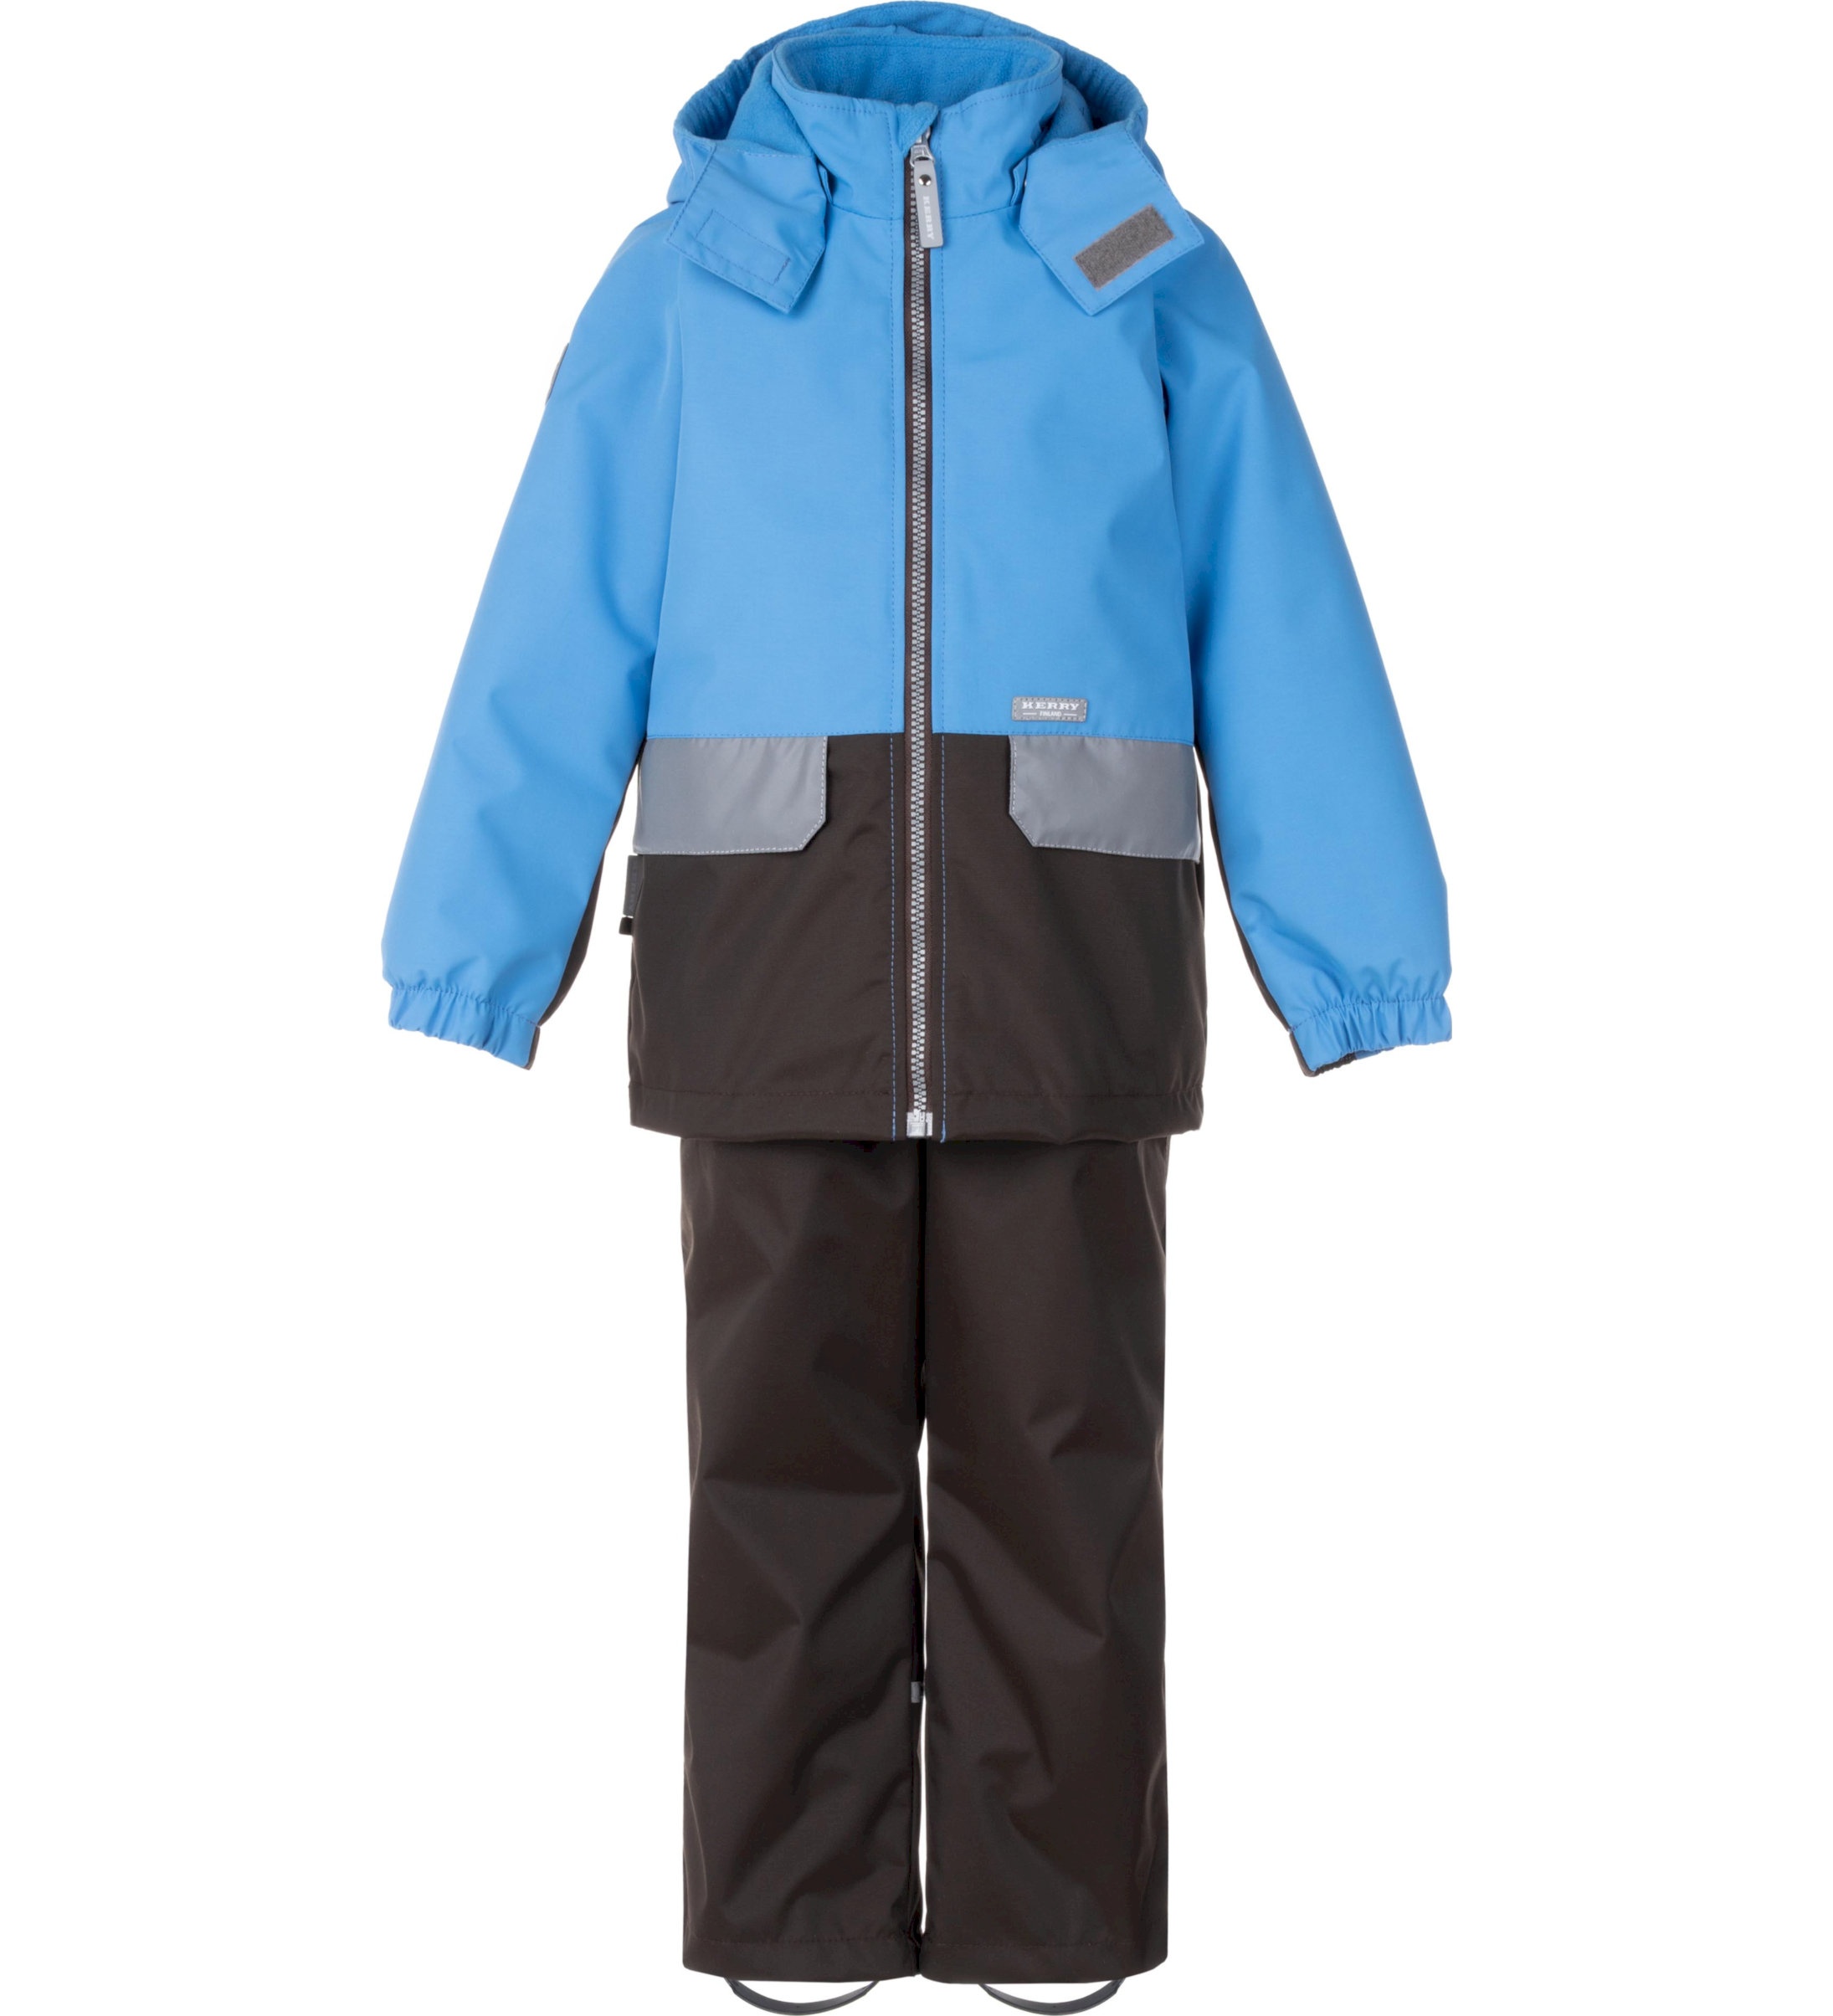 Комплект верхней одежды детский KERRY K24020, голубой; серый, 128 пылесос bort bac 500 22 900 вт сухая влажная уборка 22 л серый